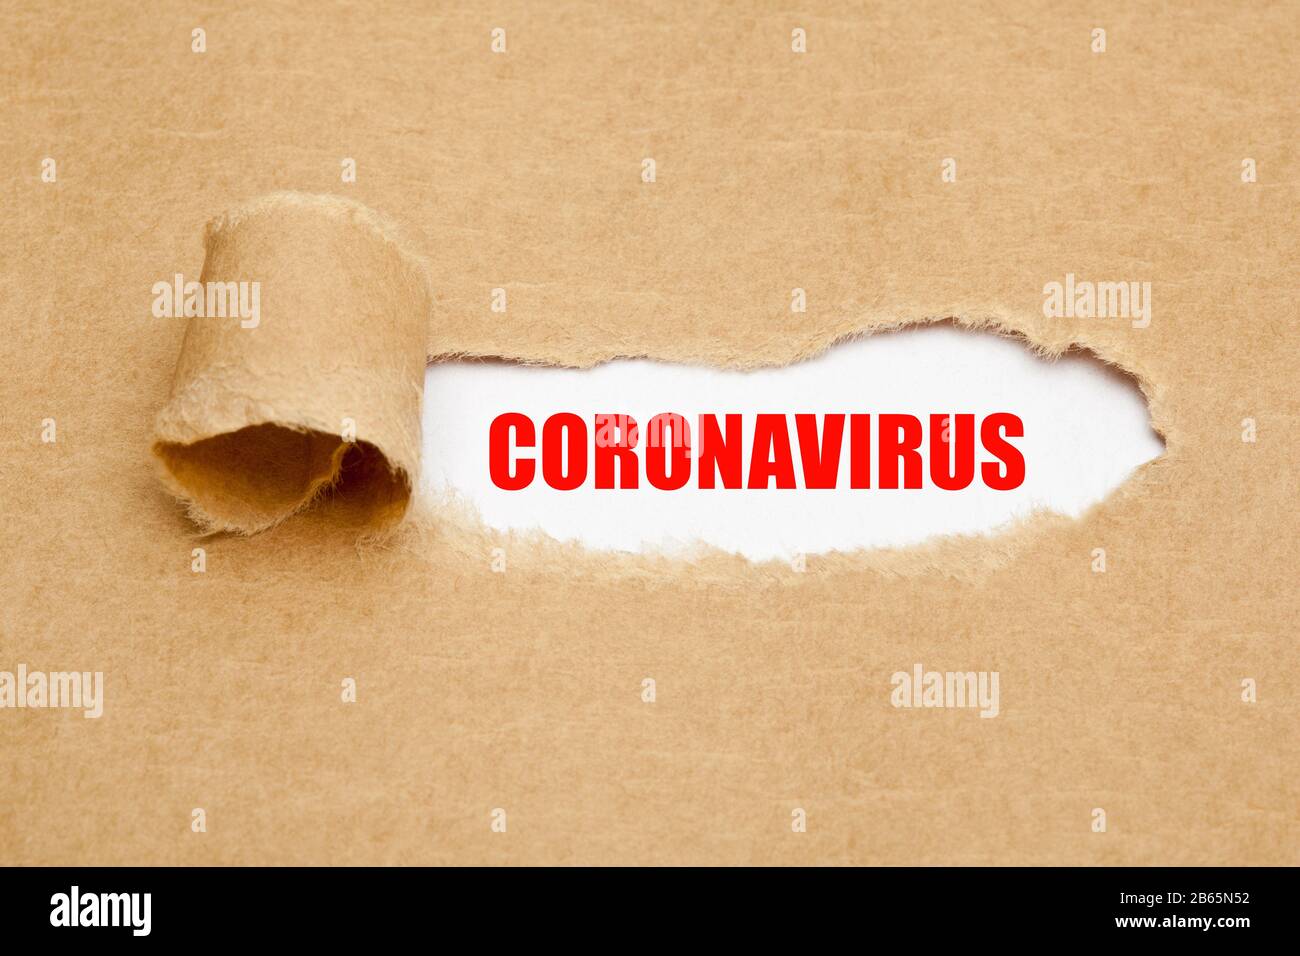 Gedrucktes Wort Coronavirus, das hinter zerrissenem braunem Papier erscheint. Covid-19-Konzept für den Ausbruch einer Virus-Epidemie. Stockfoto